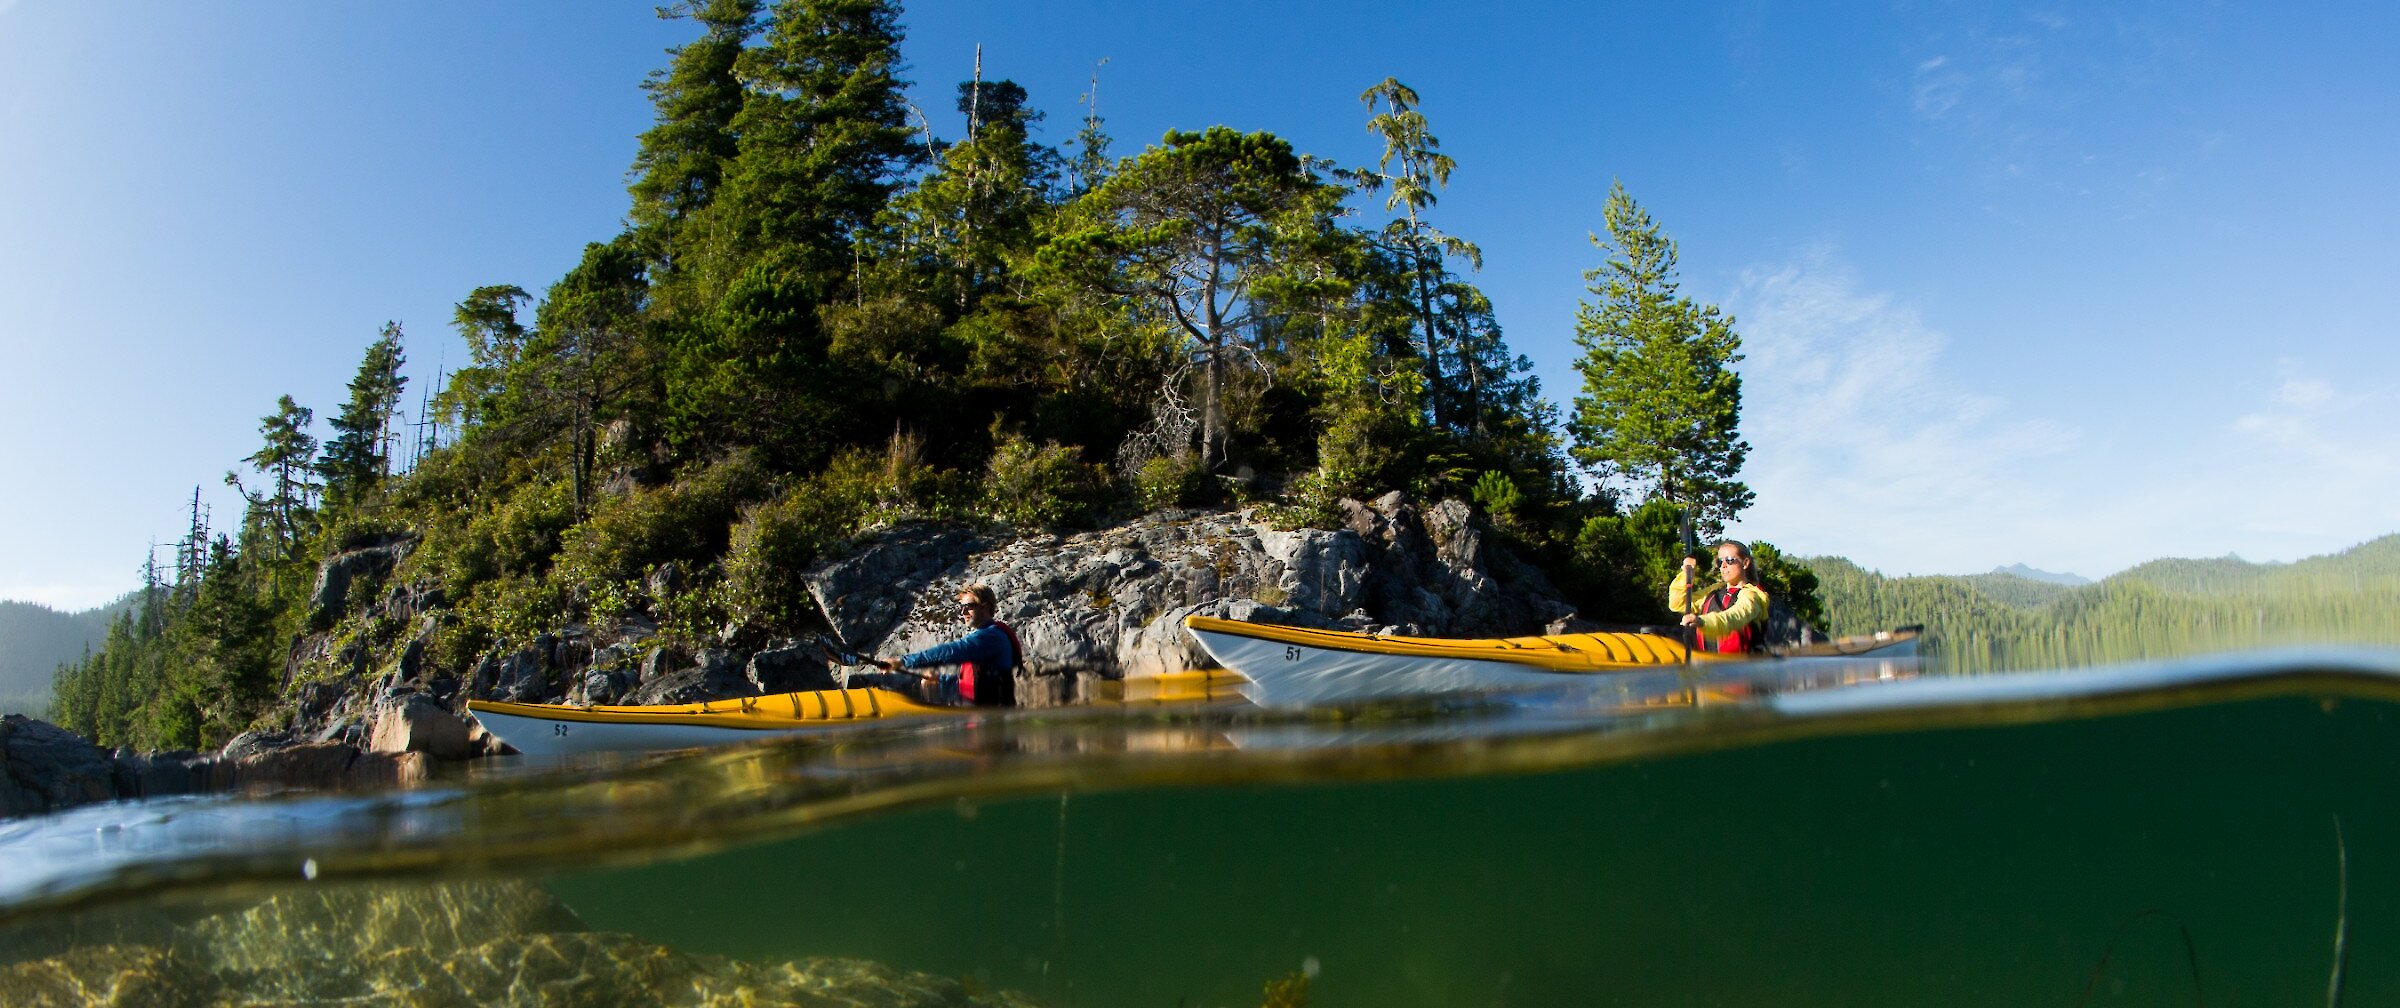 Kayakers on the ocean with underwater rocks and kelp below